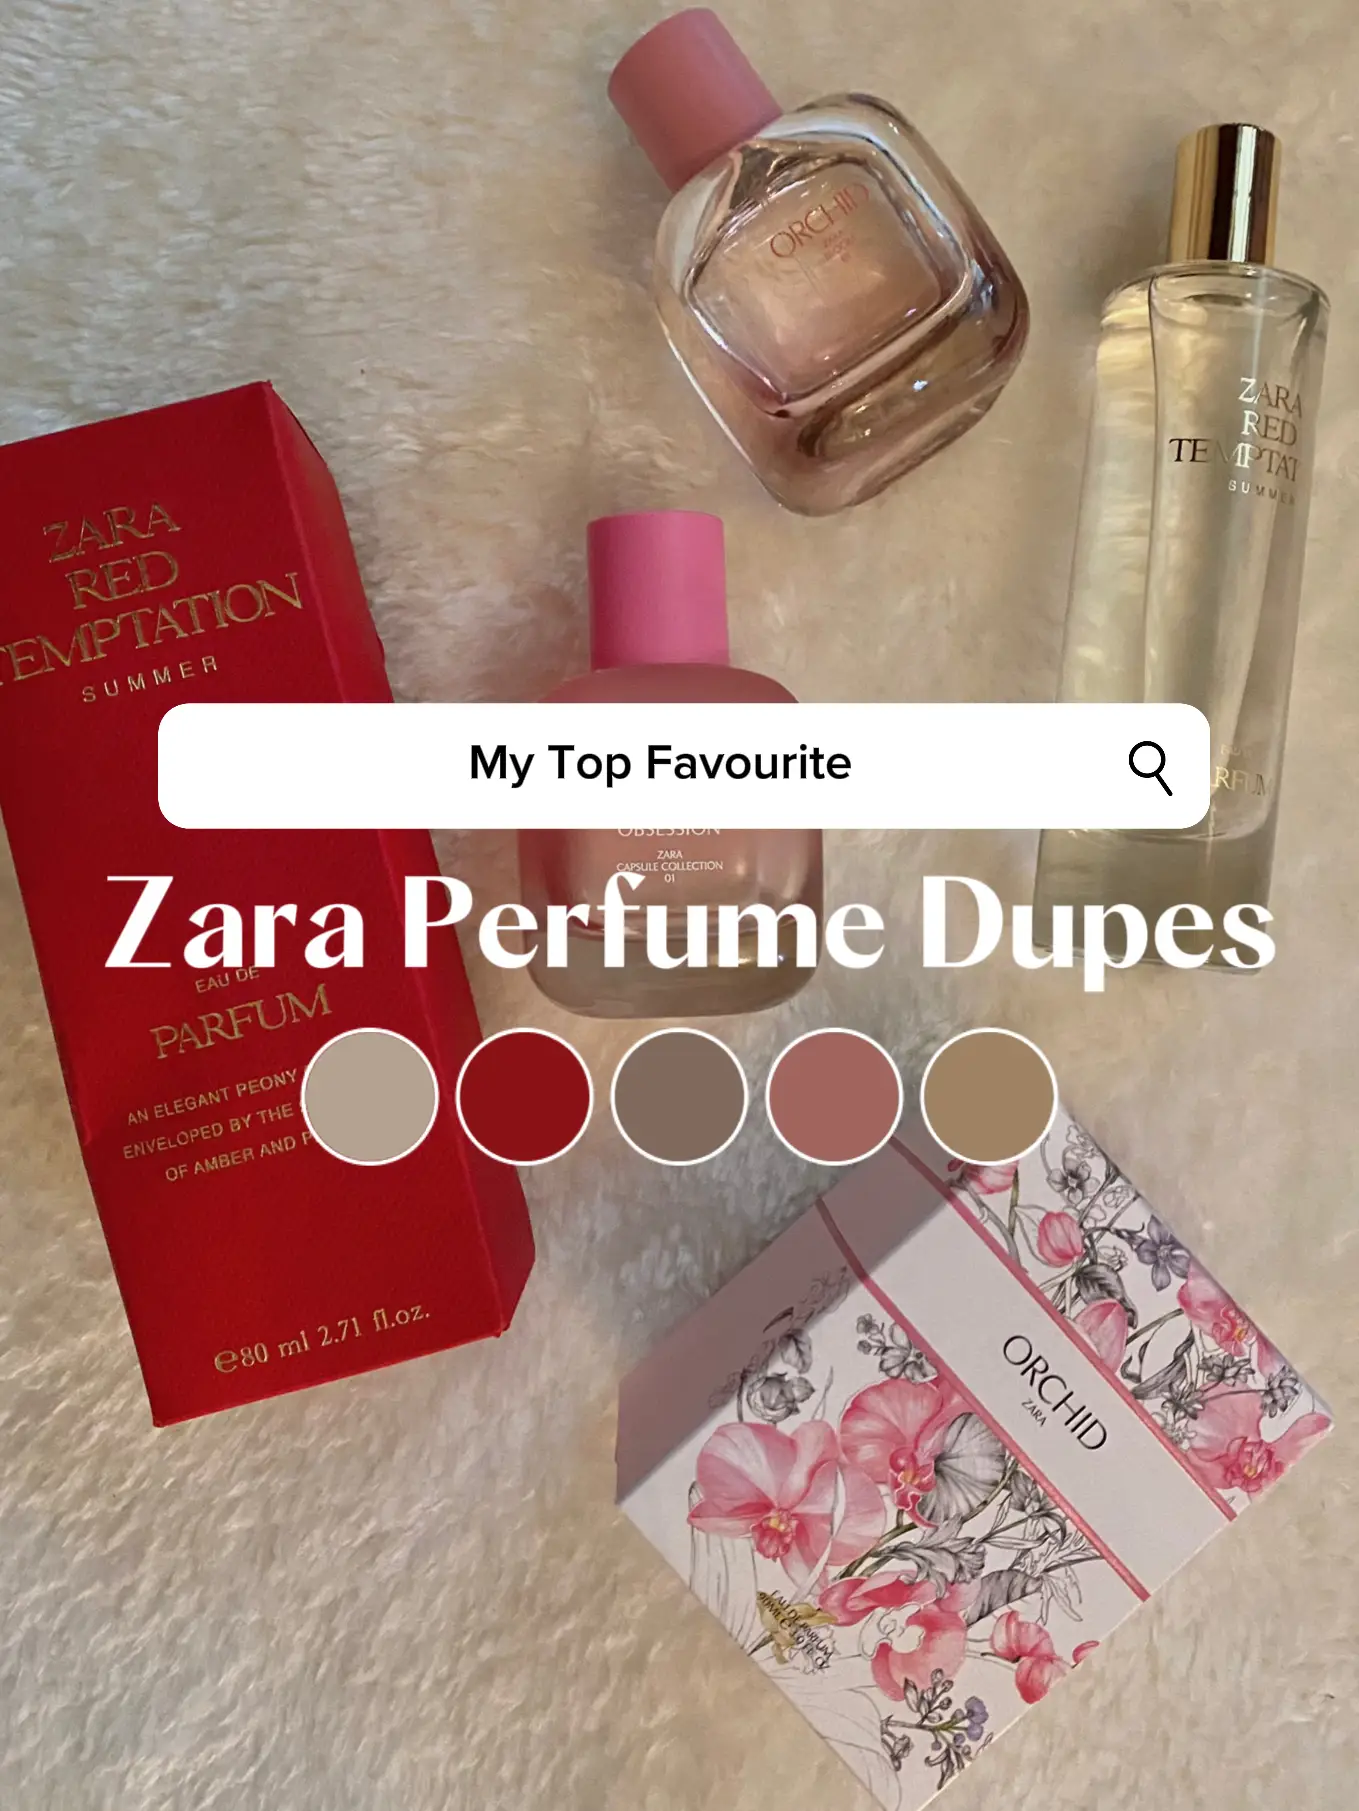 These 3 Zara Perfumes Are Great Dupes!, Galeri disiarkan oleh Munirah